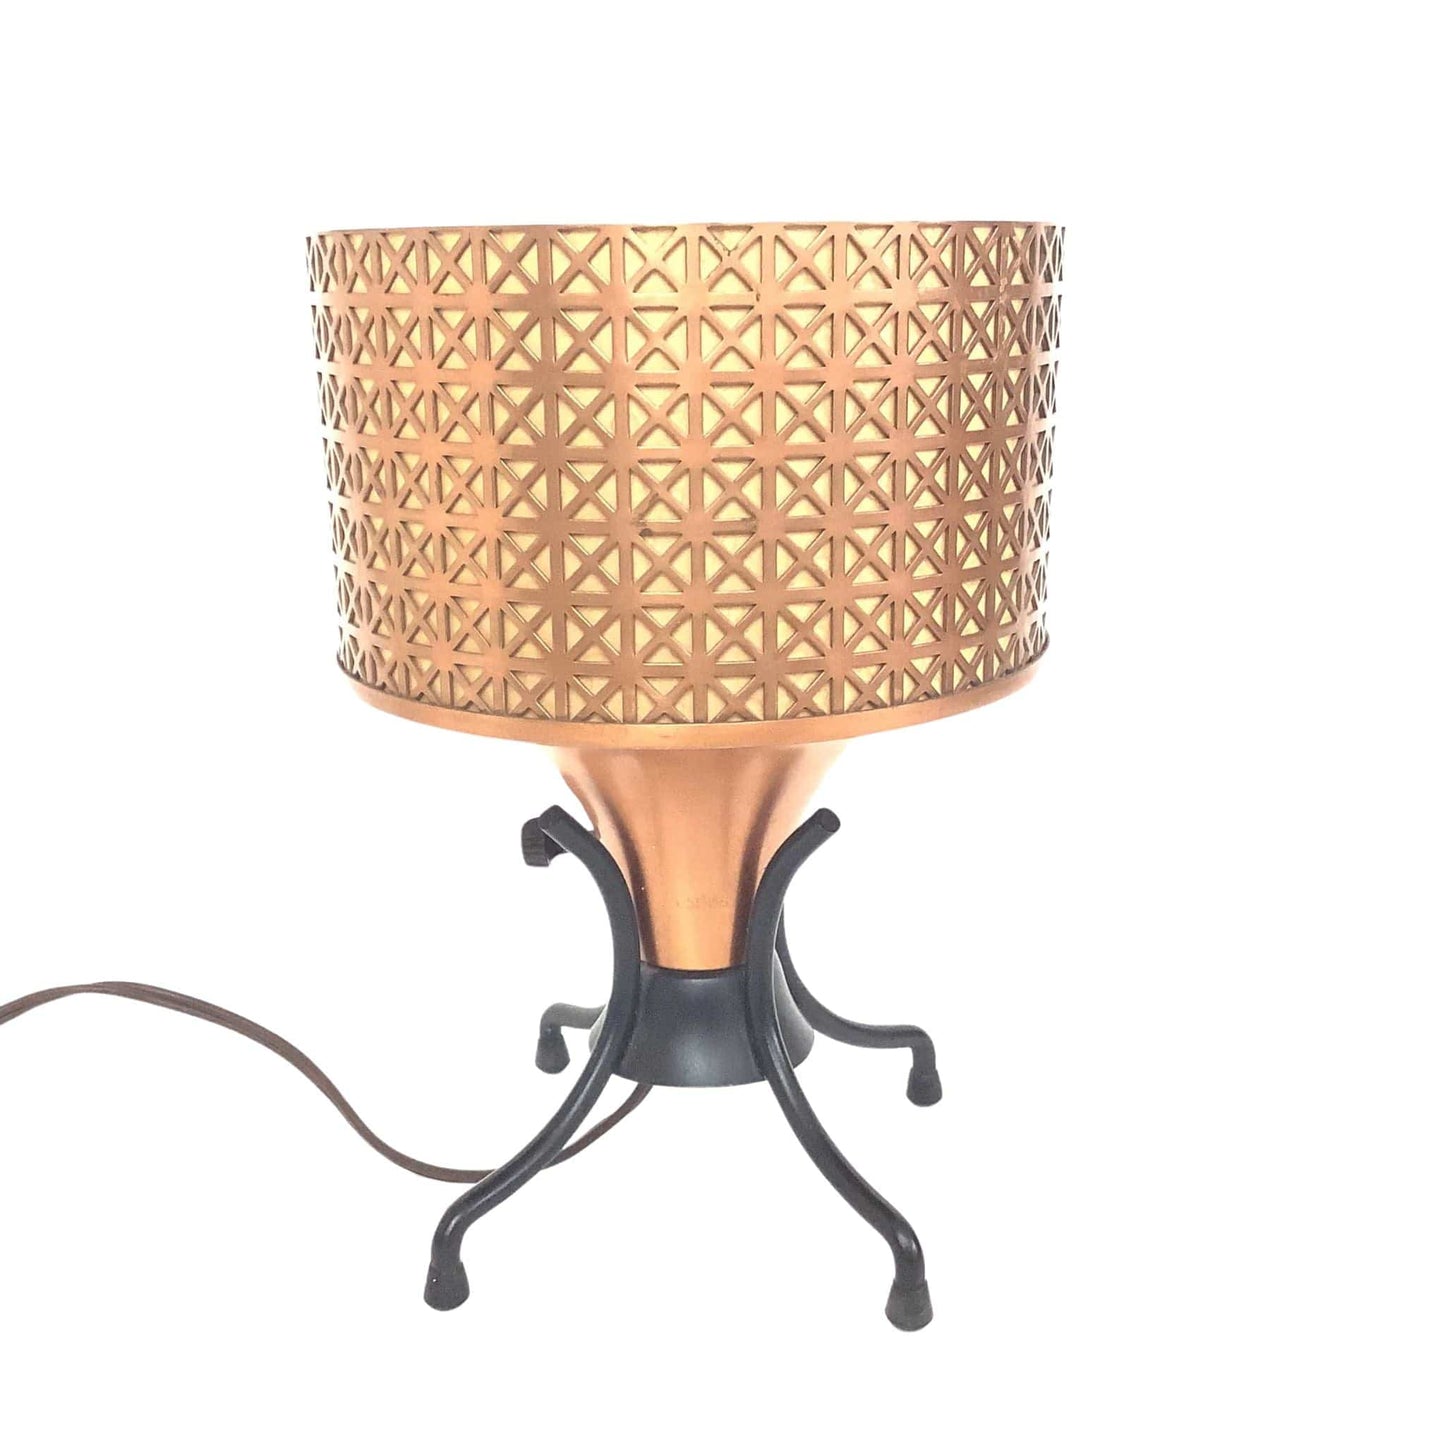 Antique Copper Table Lamp Copper / Copper / Vintage 1920s